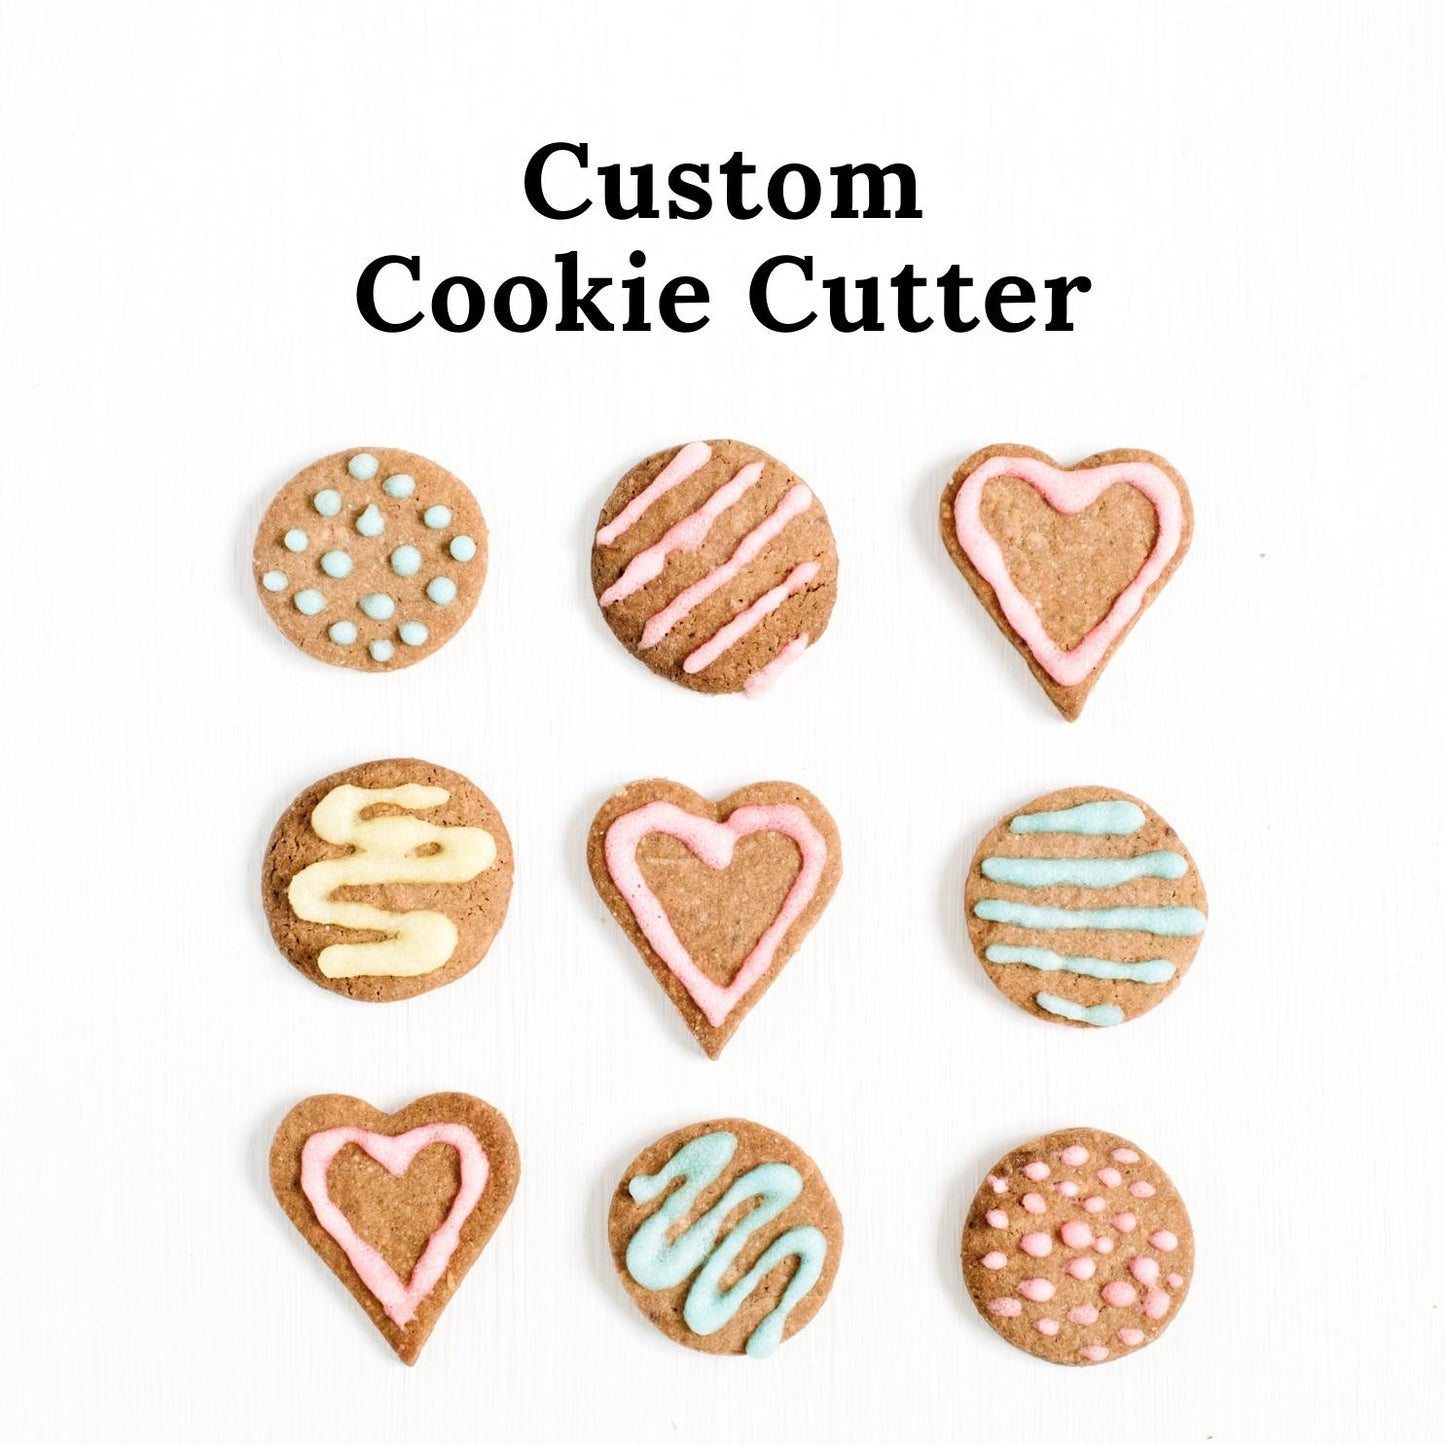 Custom Designed Cookie Cutter Made in USA PR3890